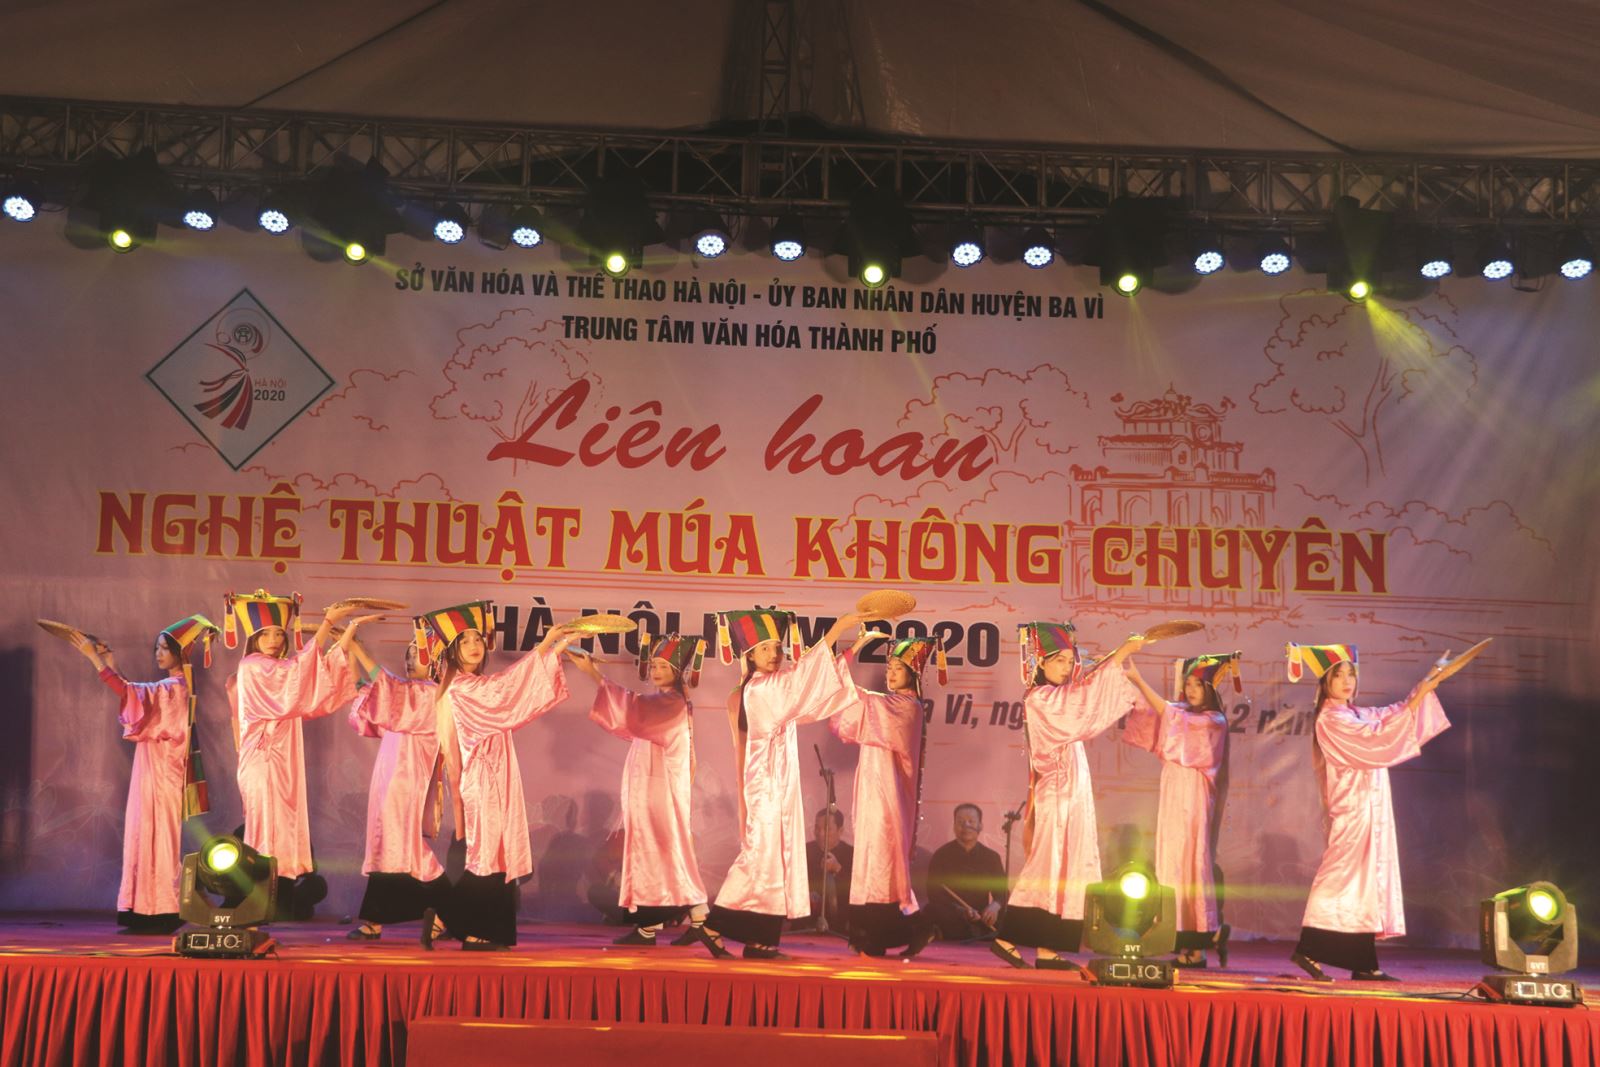 Hà Nội: Liên hoan Nghệ thuật Múa không chuyên Hà Nội năm 2020 tại huyện Ba Vì